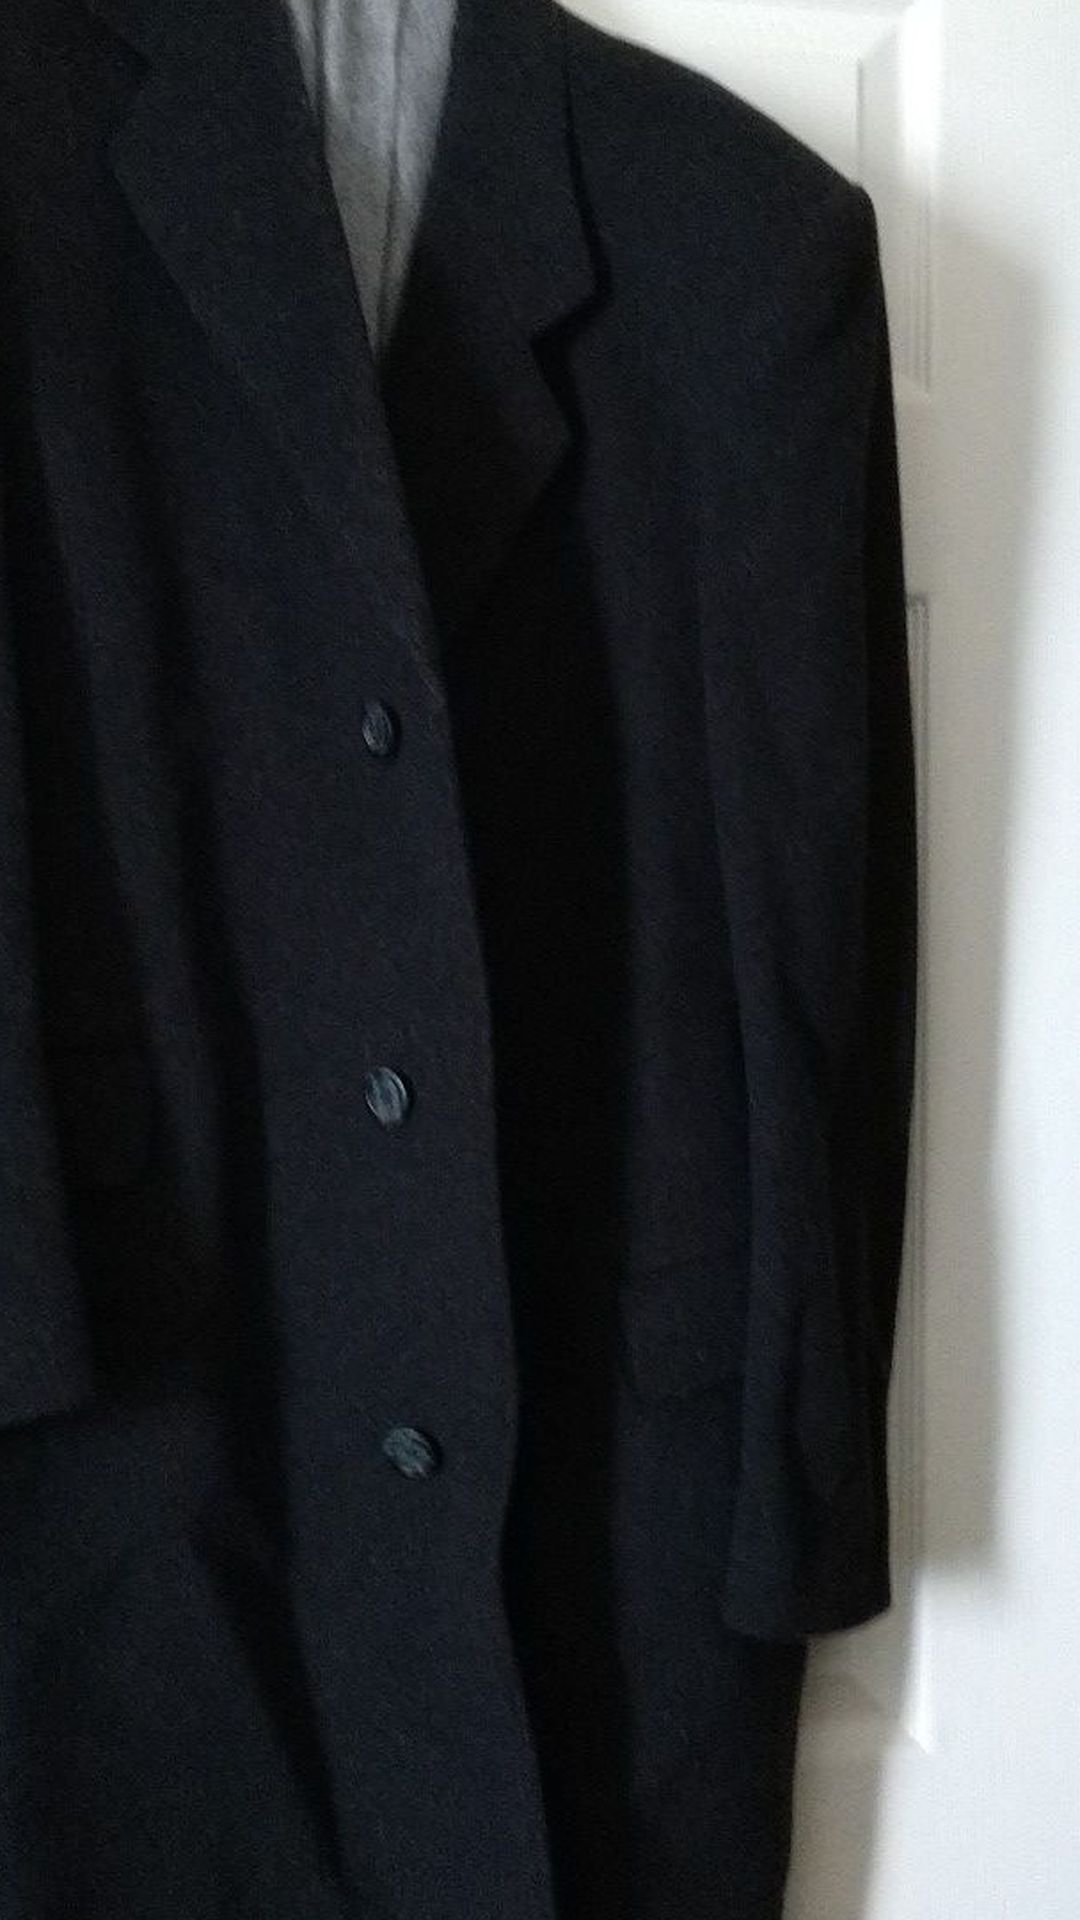 Men's cashmere suit coat